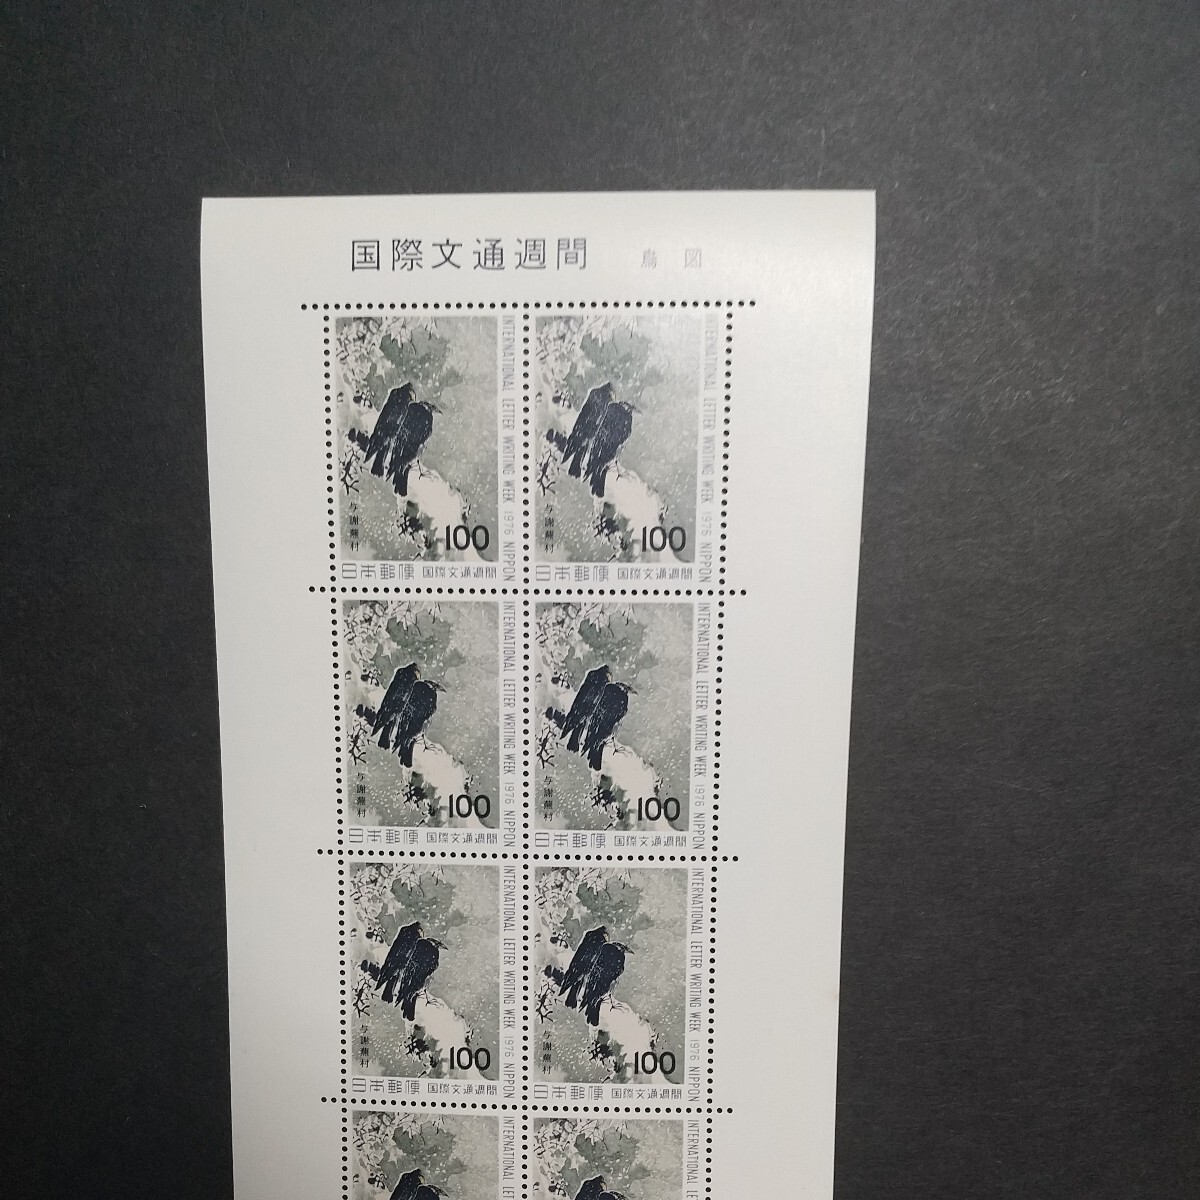 国際文通週間 鳶鳥図 切手シート未使用の画像2